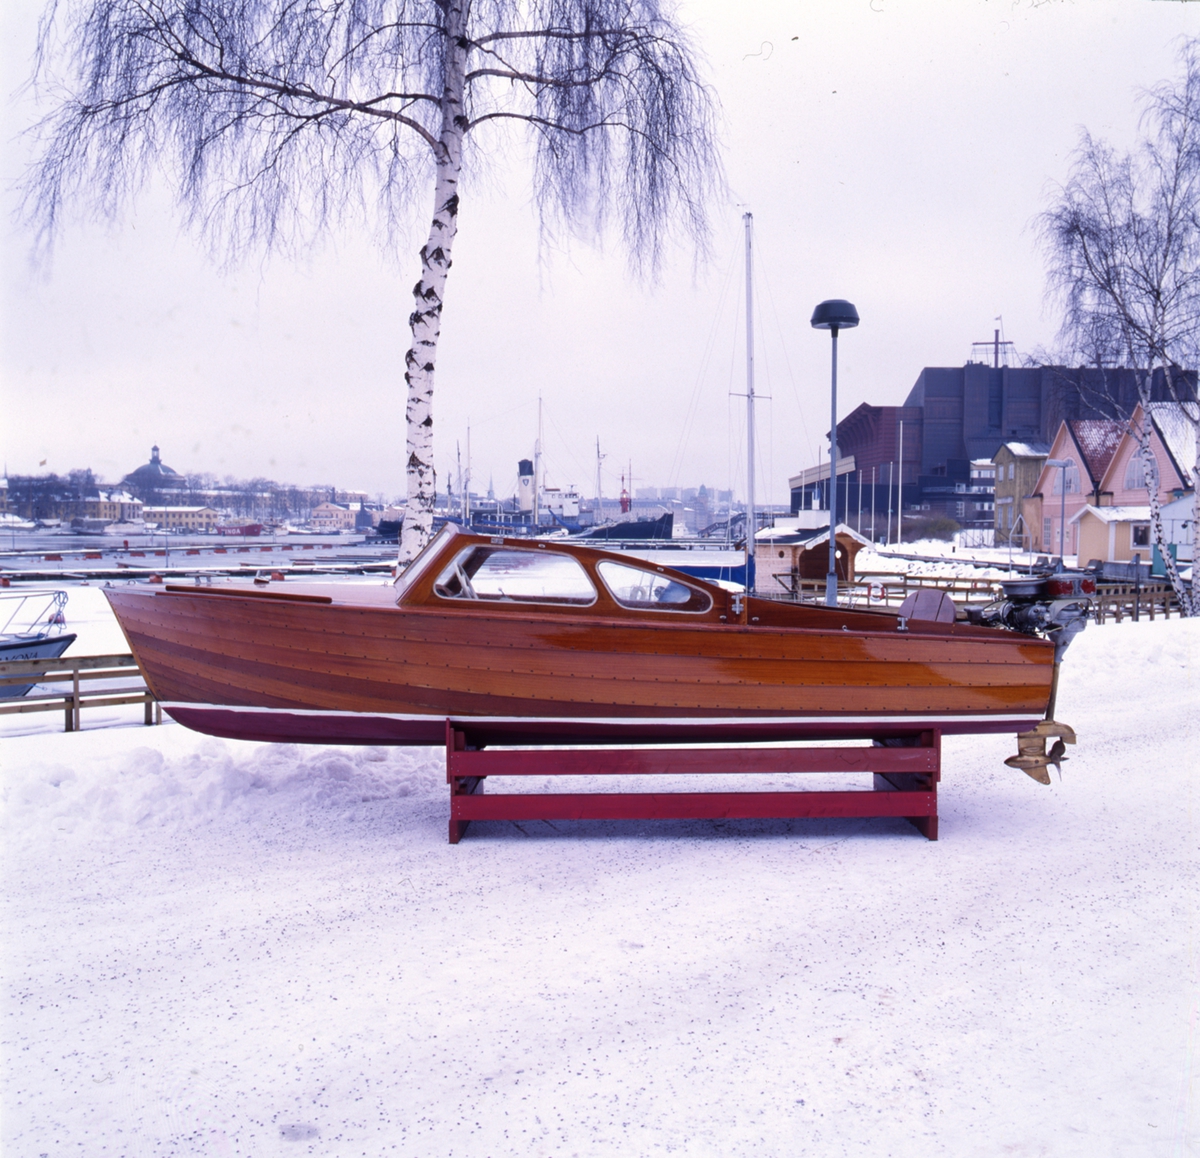 Electrolux campingbåt i Sjöhistoriska museets samlingar.